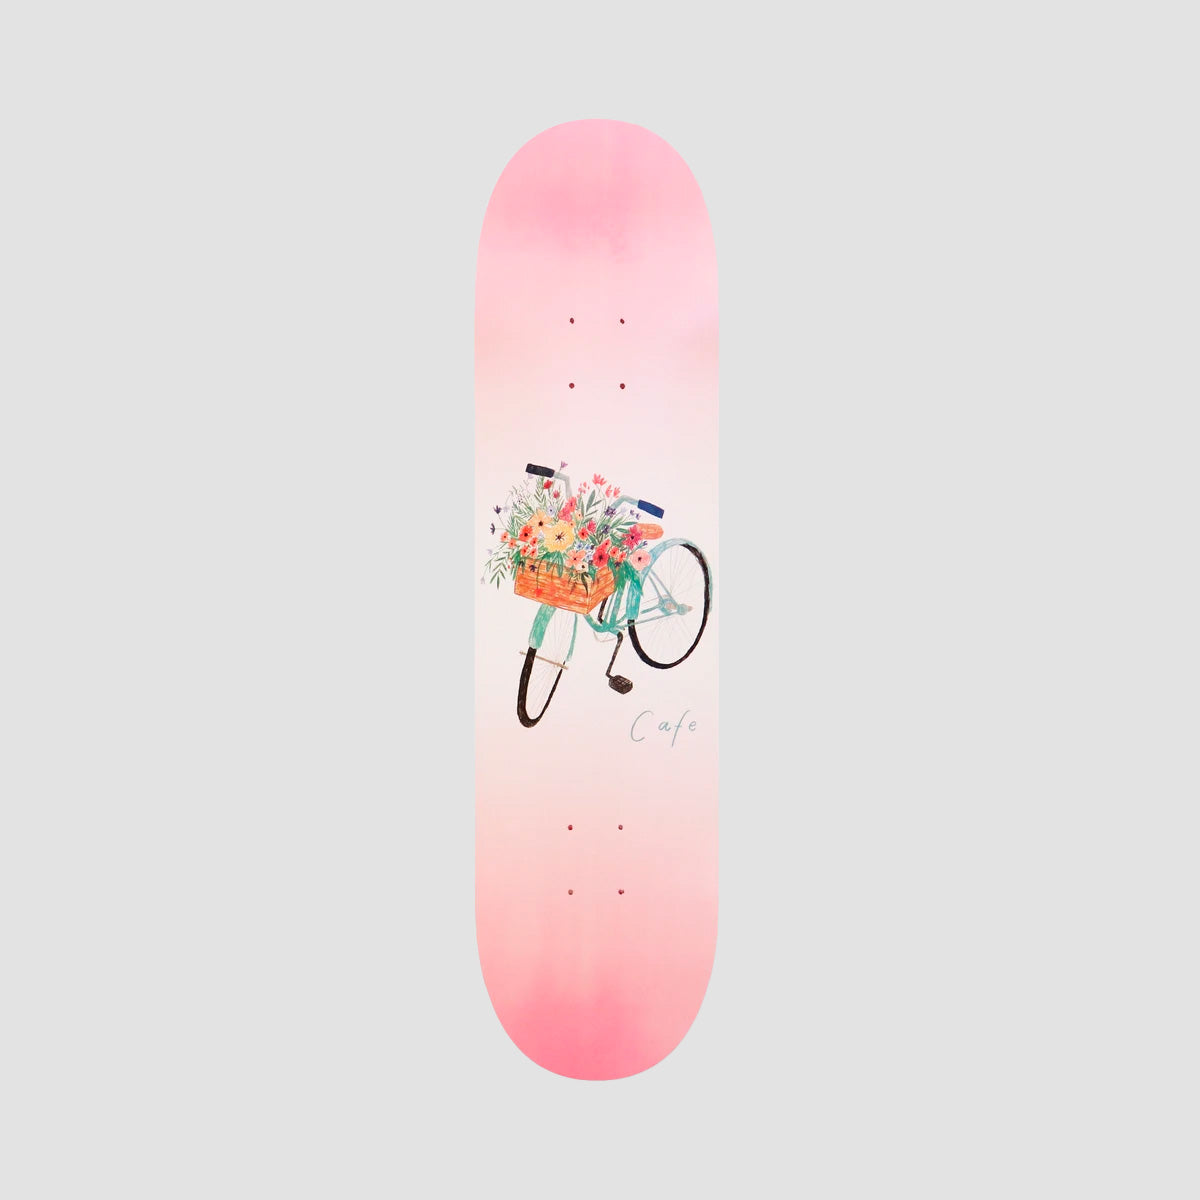 Skateboard Cafe Flower Basket Skateboard Deck Pink - 8.125"